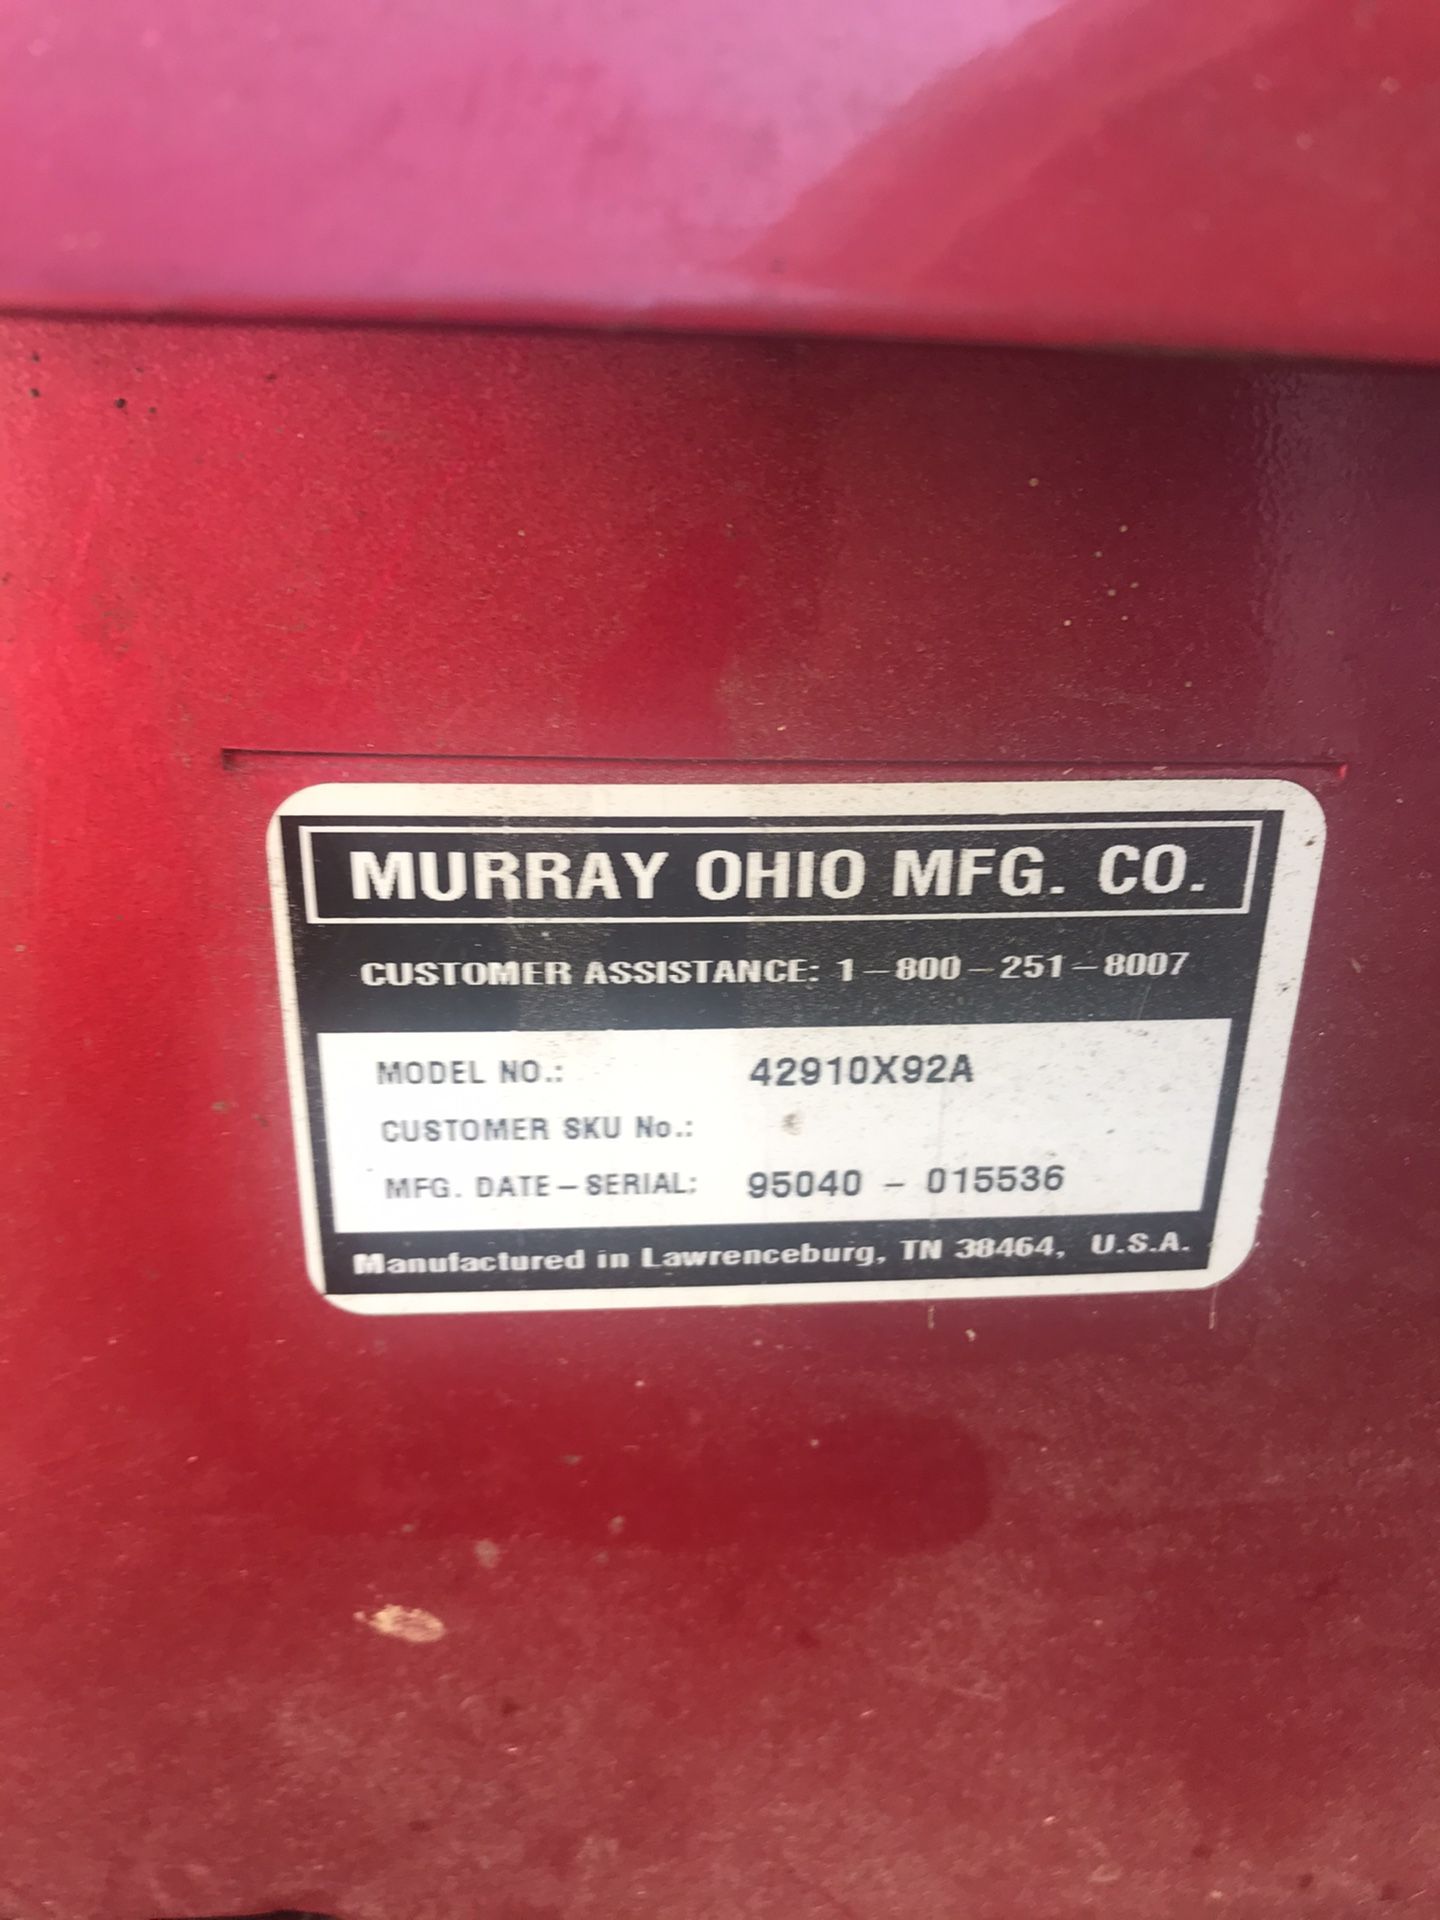 Murray 1996 lawn mower new battery runs needs some work but runs good best offer